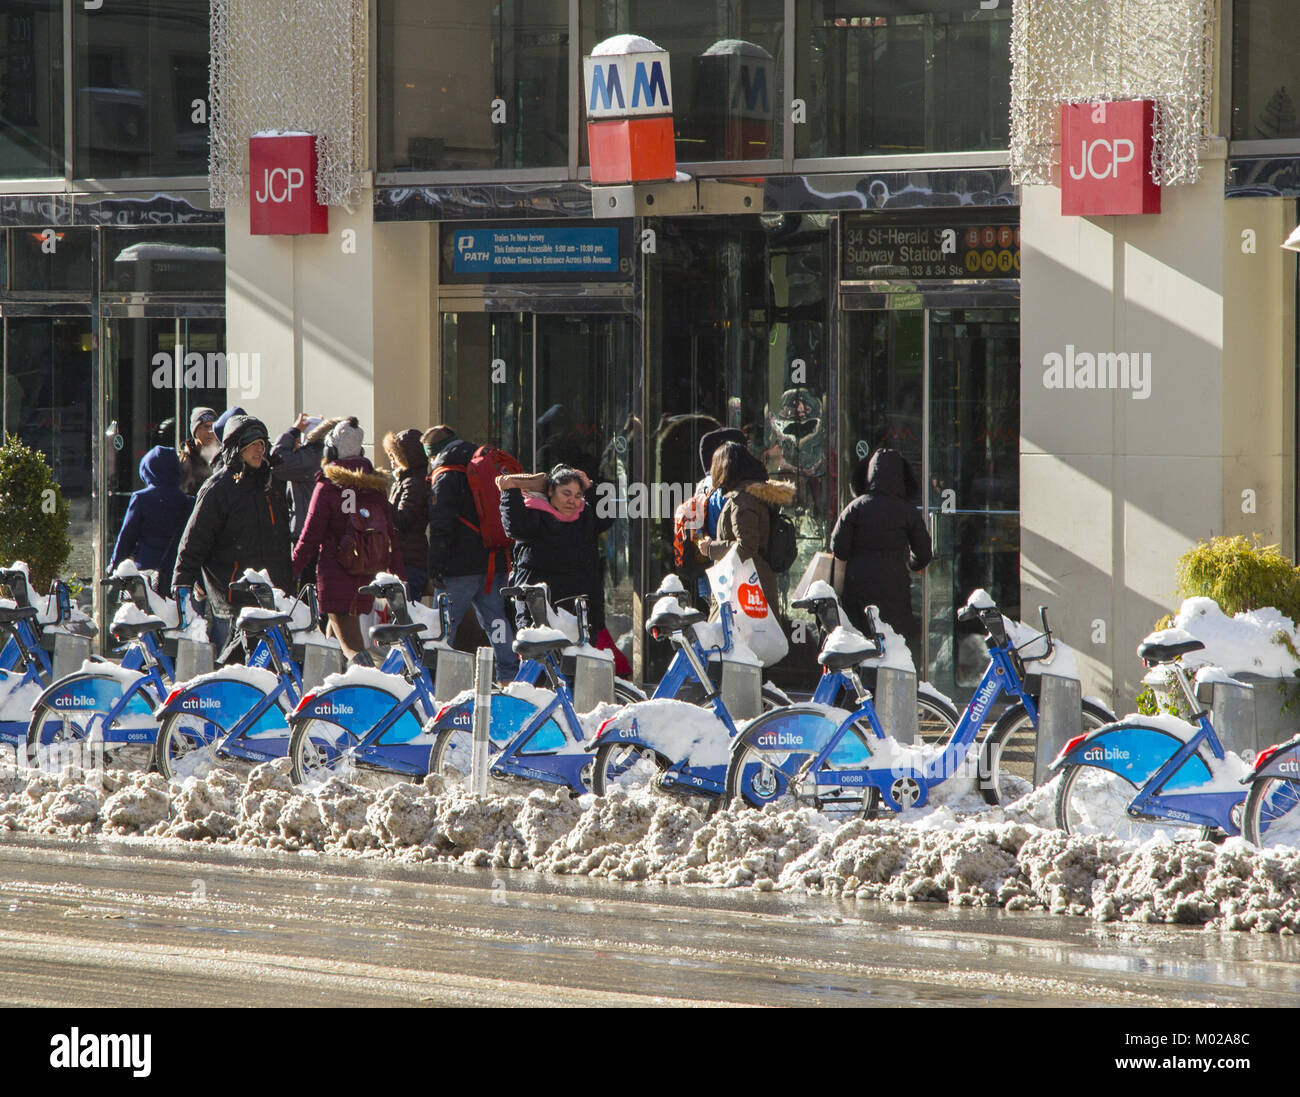 Prêt de vélos garés à une station Vélo Citi sur Broadway en face de Manhattan Mall après une neige dans midtown Manhattan, New York. Banque D'Images